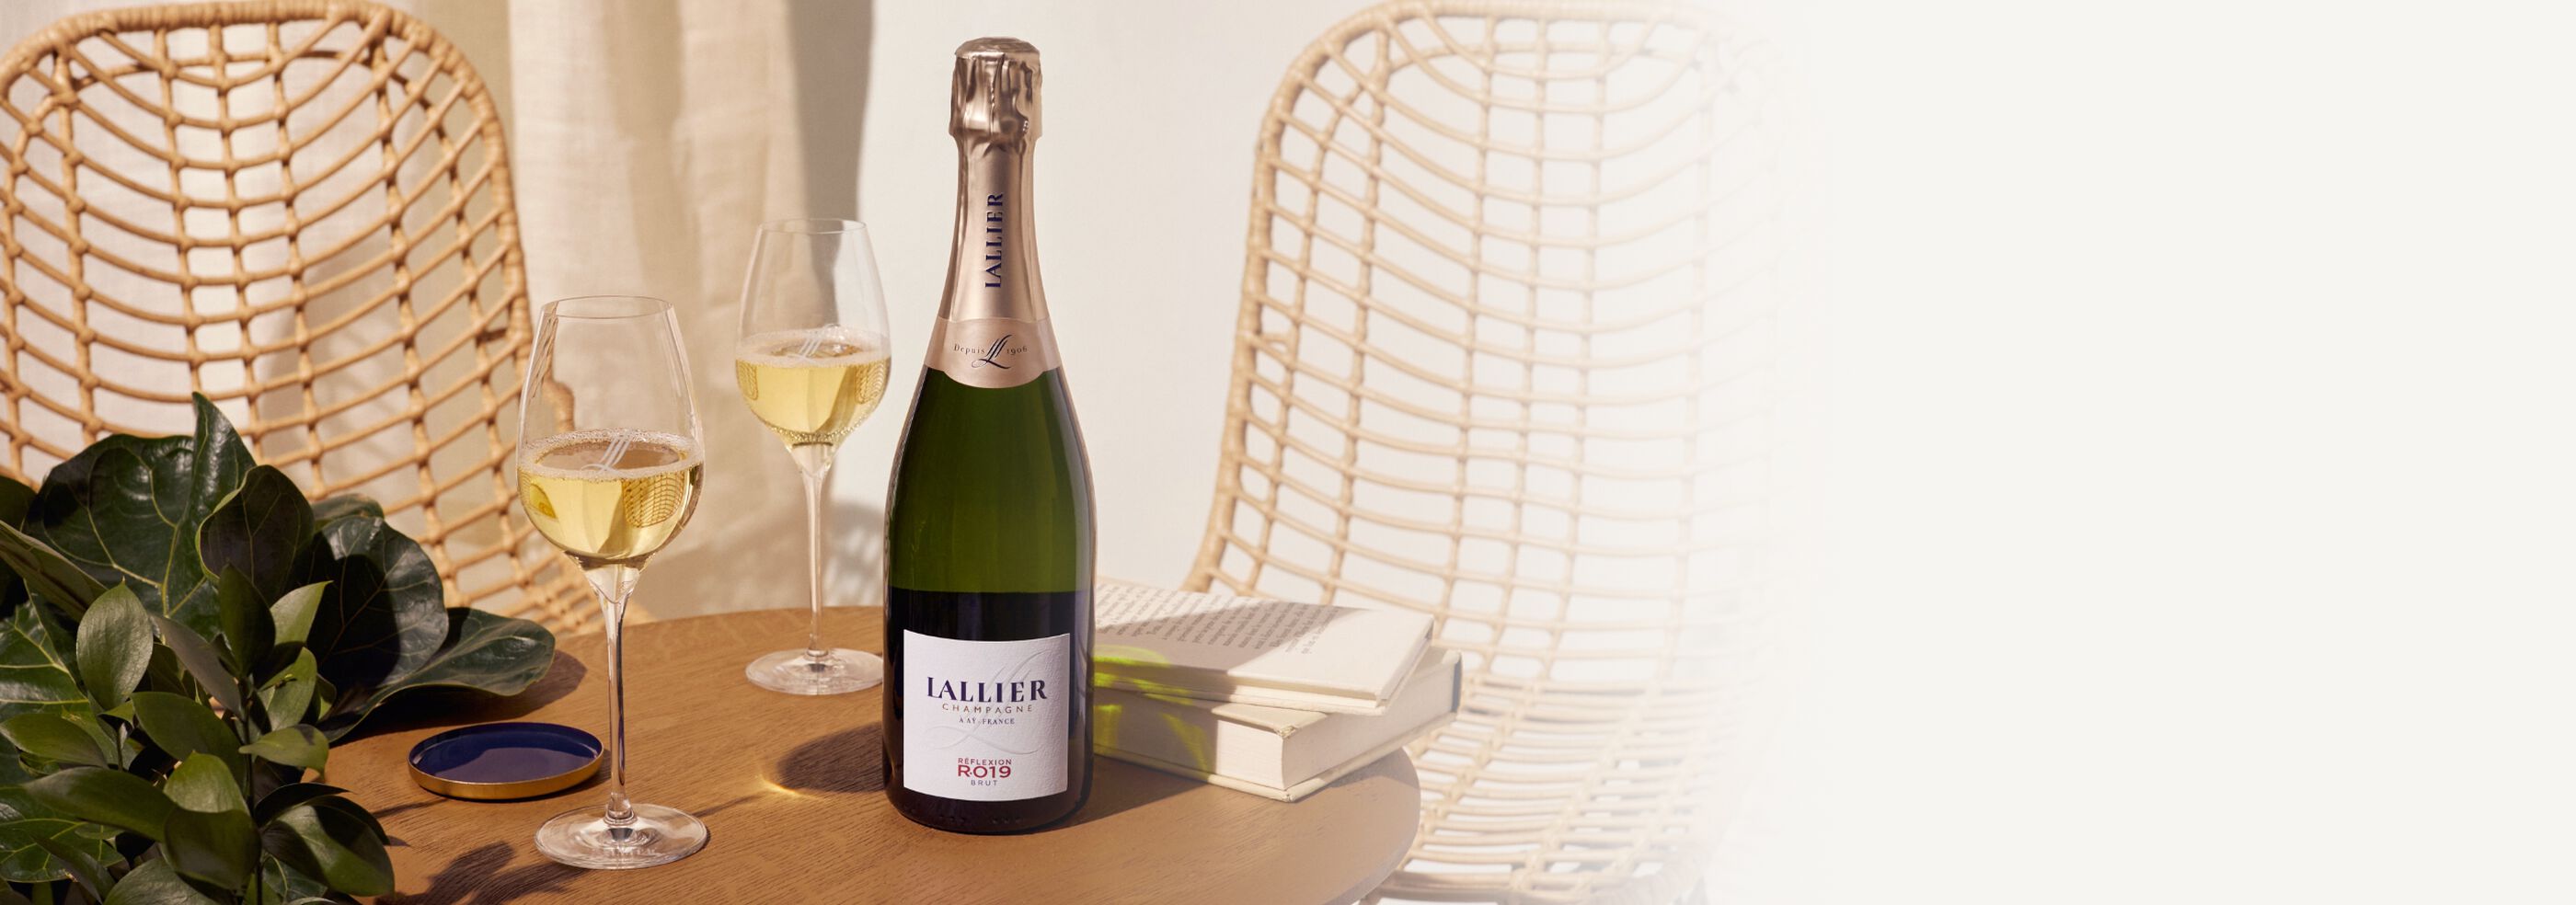 Premium Champagne Bottle, Lallier Réflexion R.019 Brut Champagne 